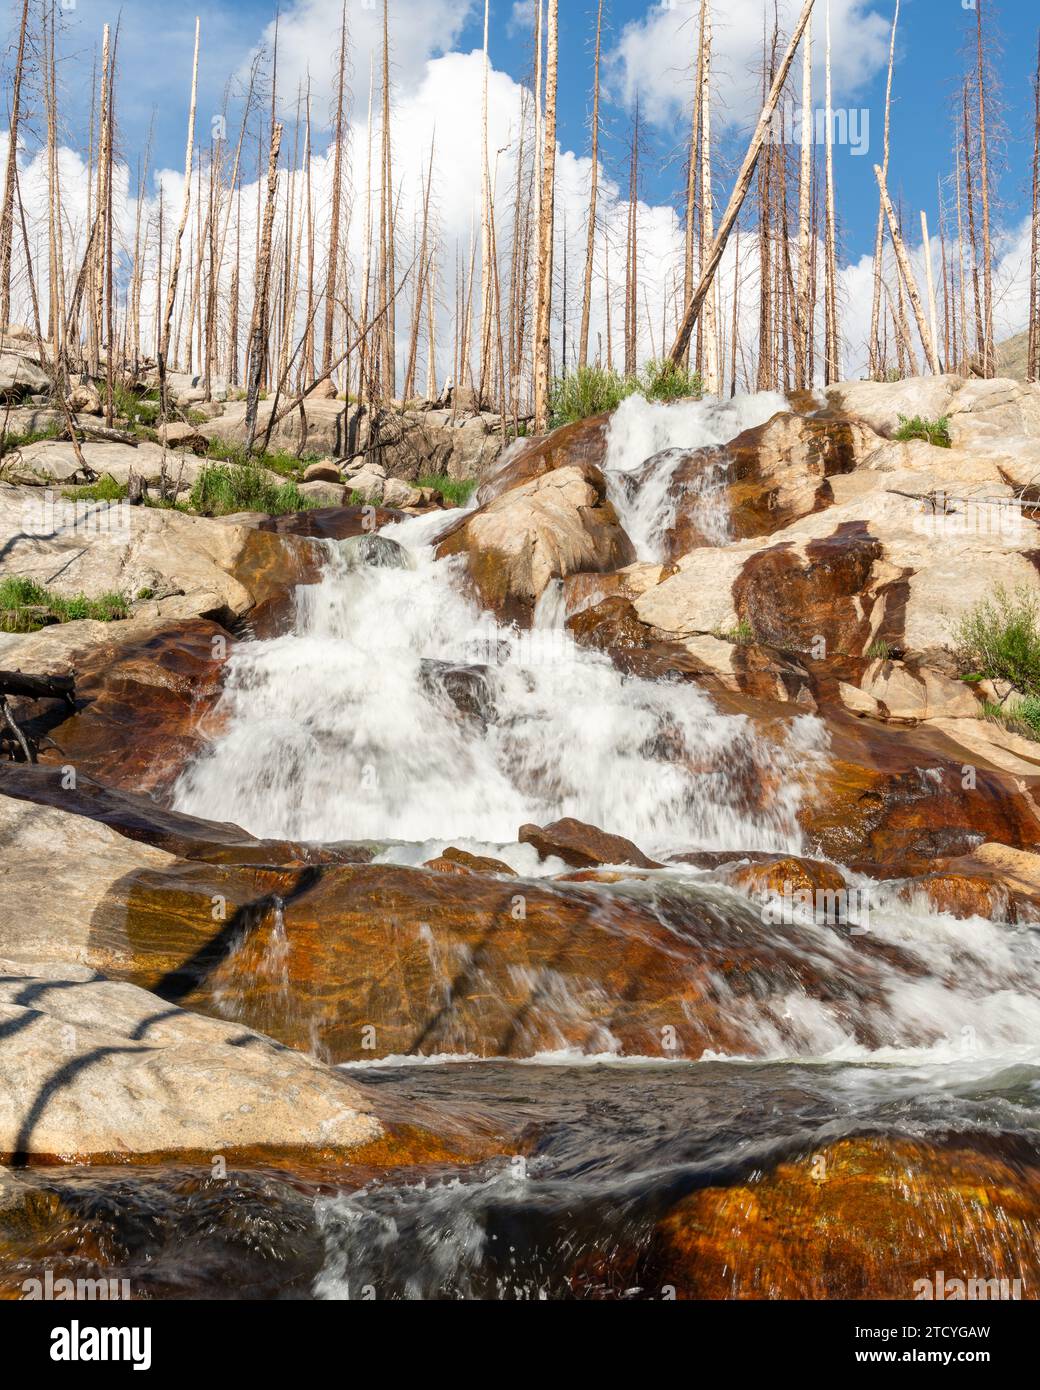 Le acque a cascata e la ricrescita definiscono il paesaggio resiliente del Parco Nazionale delle Montagne Rocciose. Foto Stock